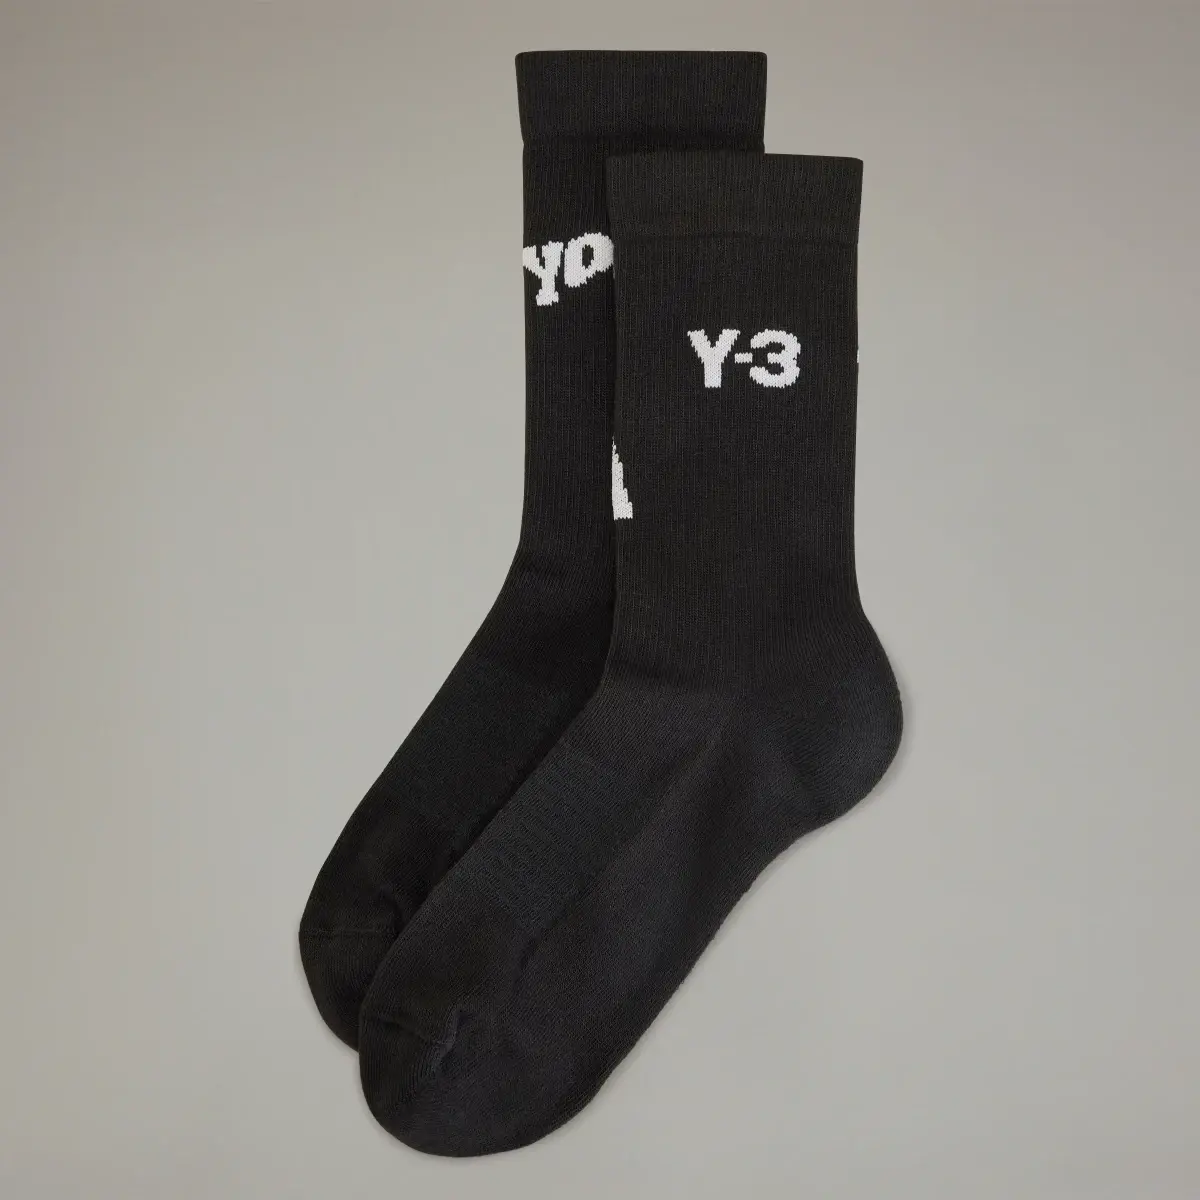 Adidas Y-3 Crew Socks. 2